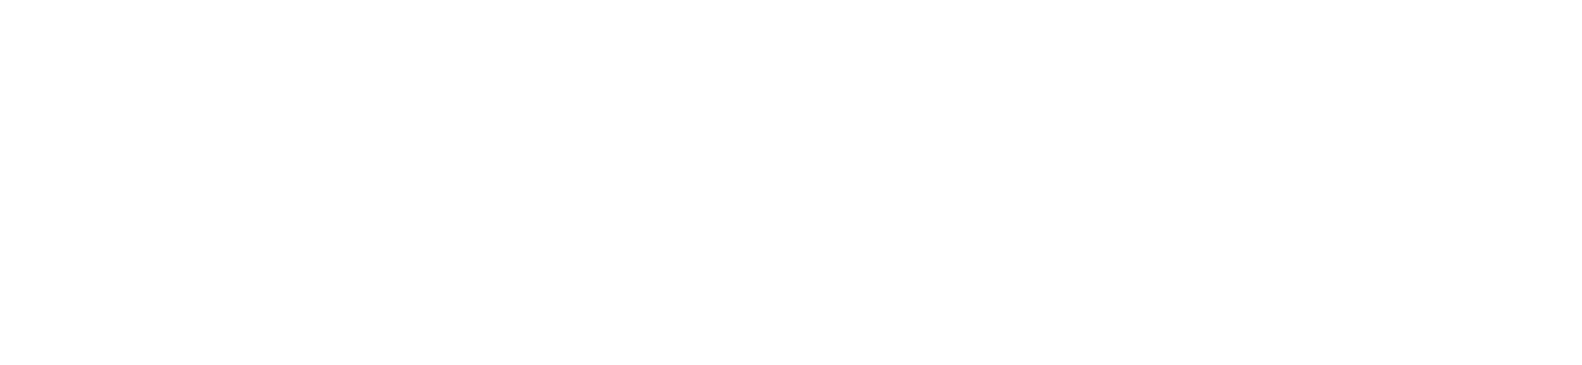 Bogs logo